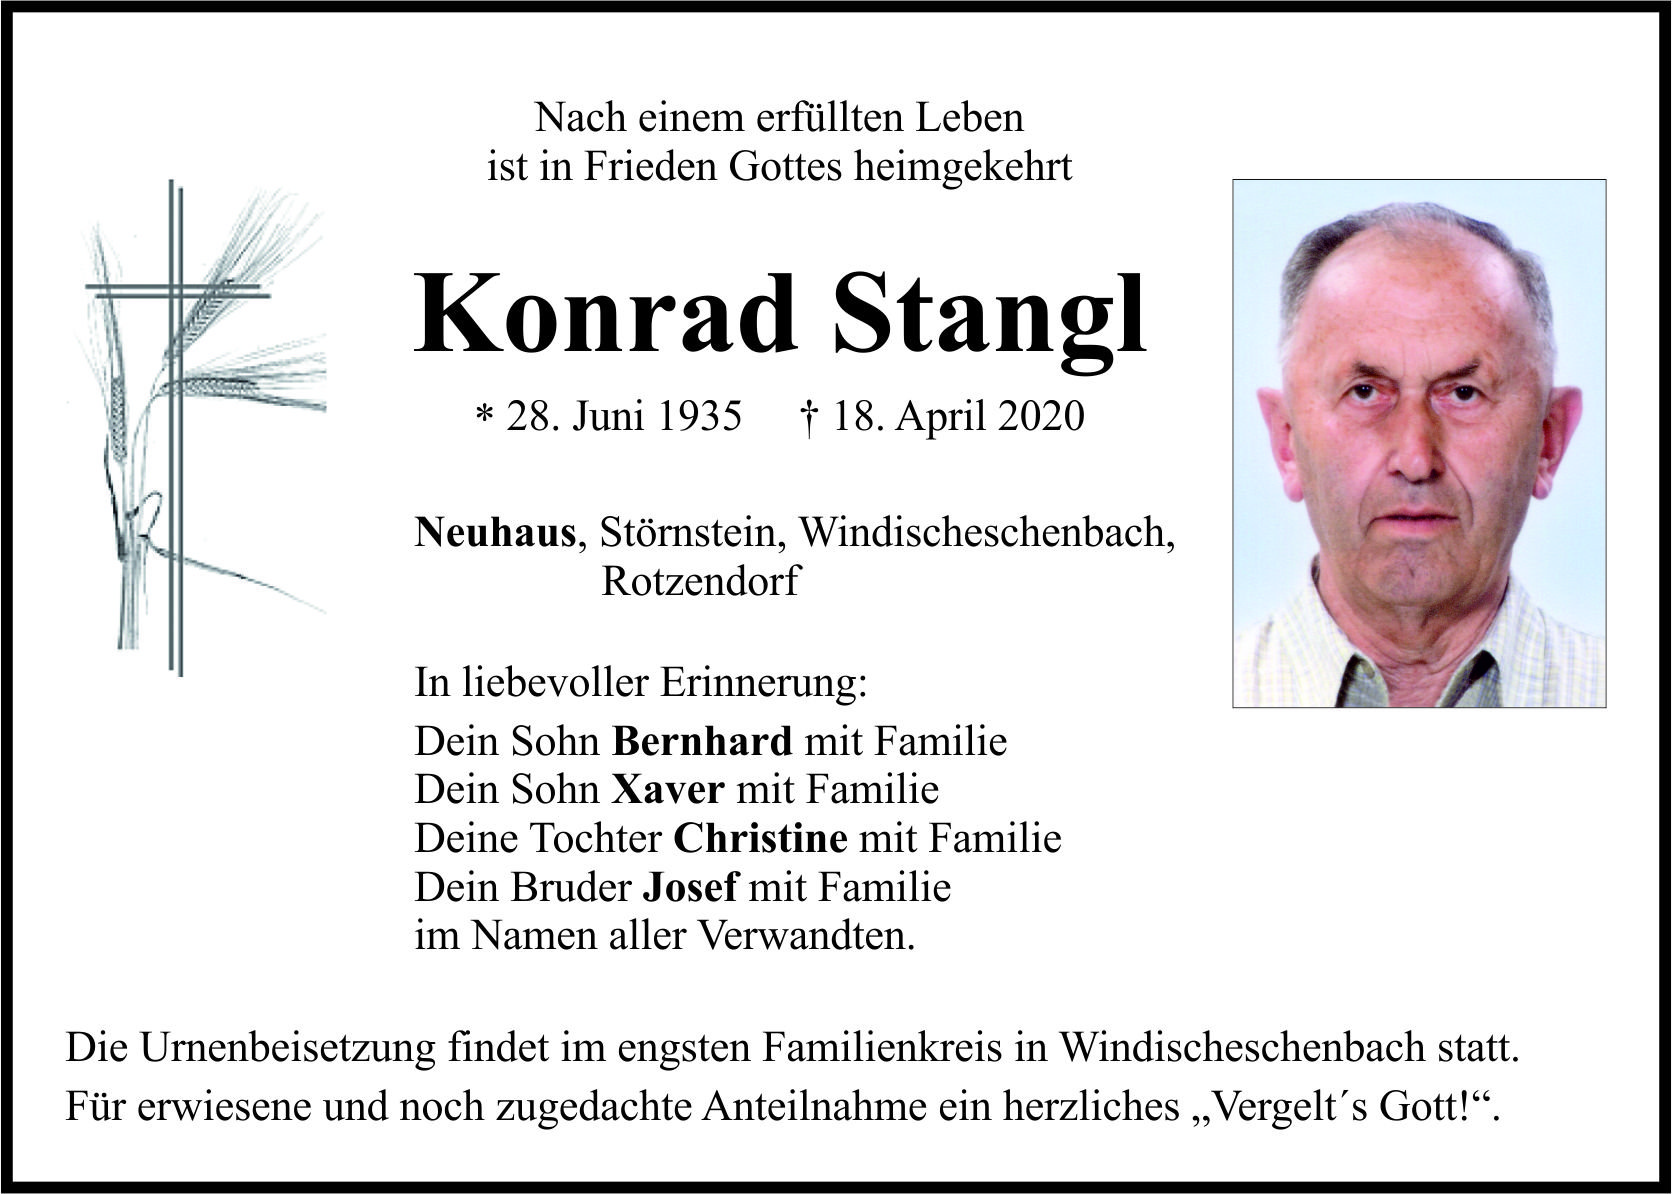 Traueranzeige Konrad Stangl